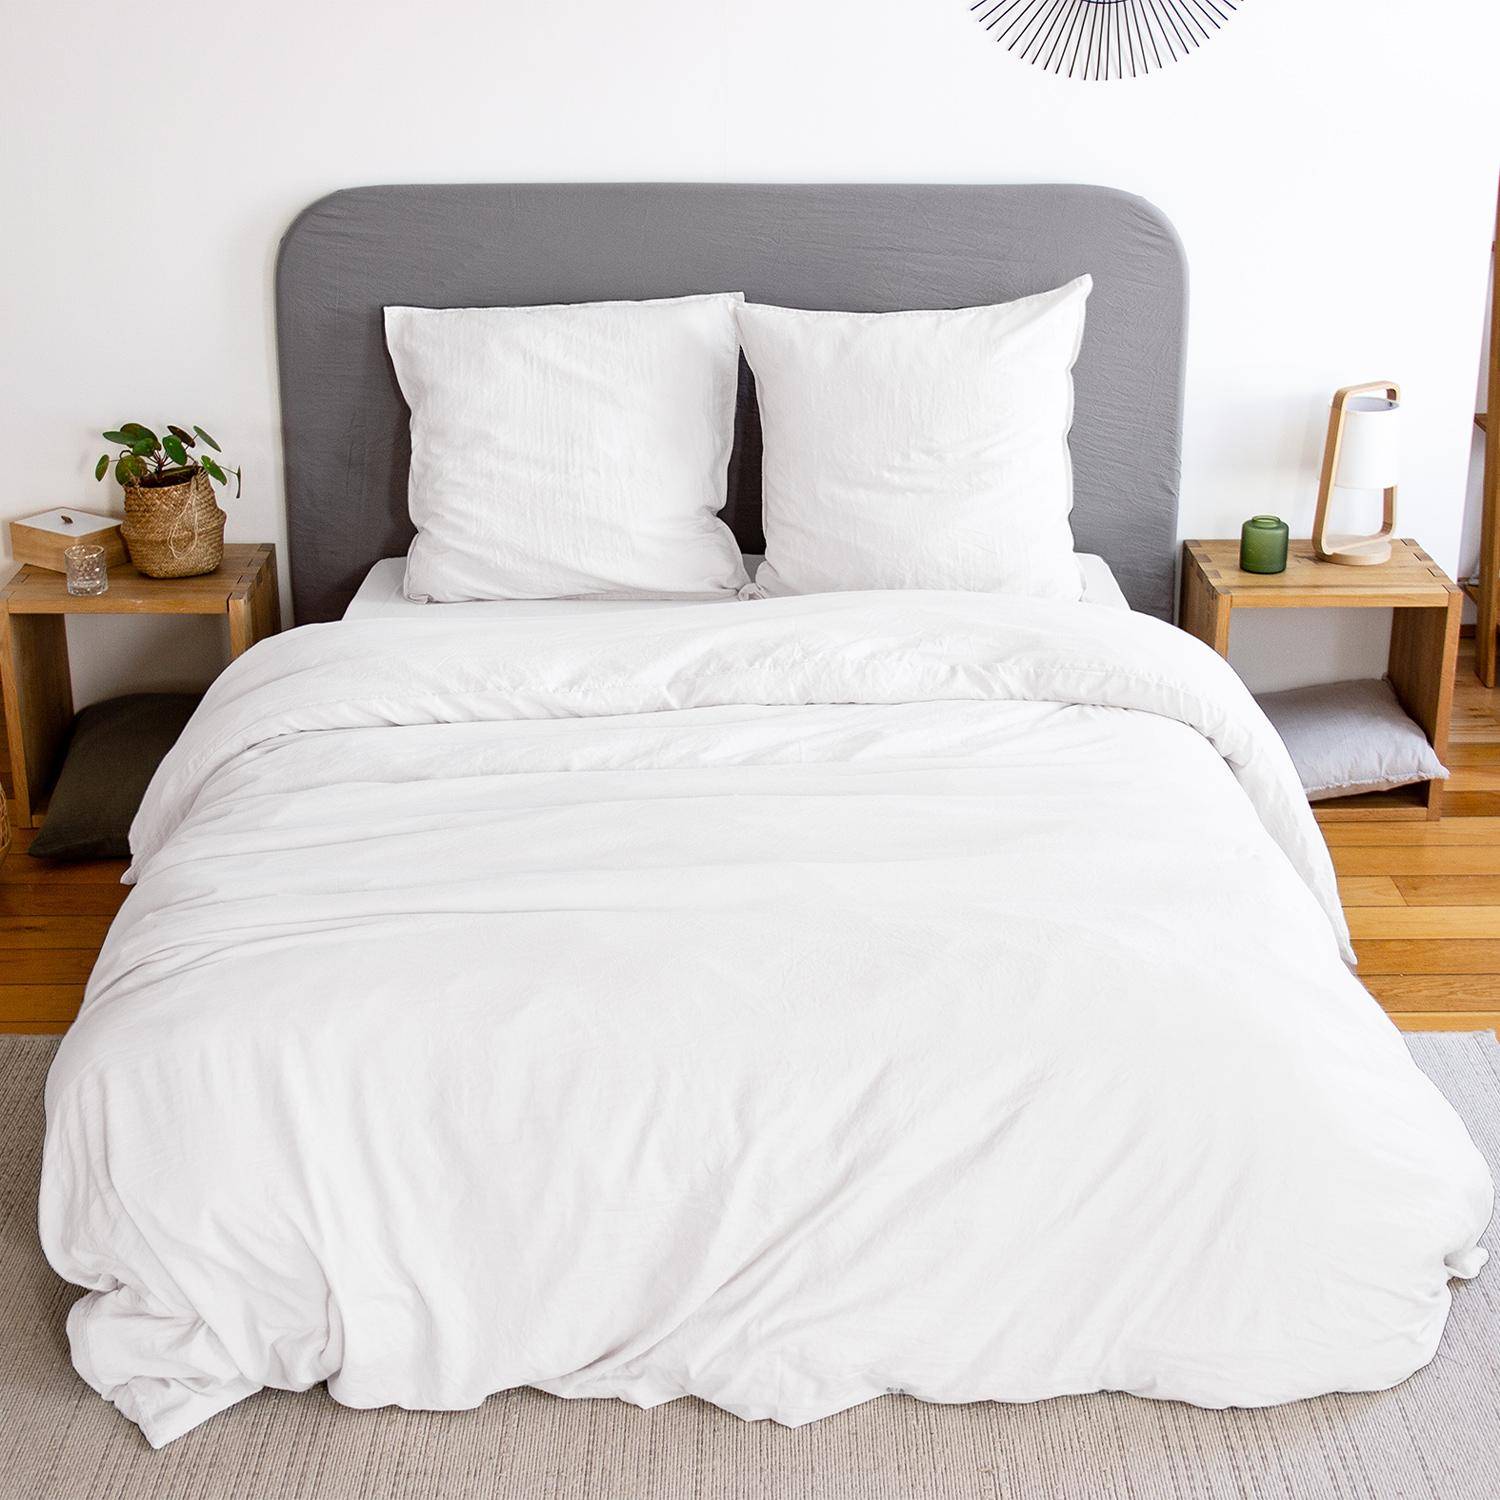 Parure de lit en microfibre lavée, blanc, 240 x 220cm pour lit 2 places avec 1 housse de couette et 2 taies d'oreillers,sweeek,Photo1